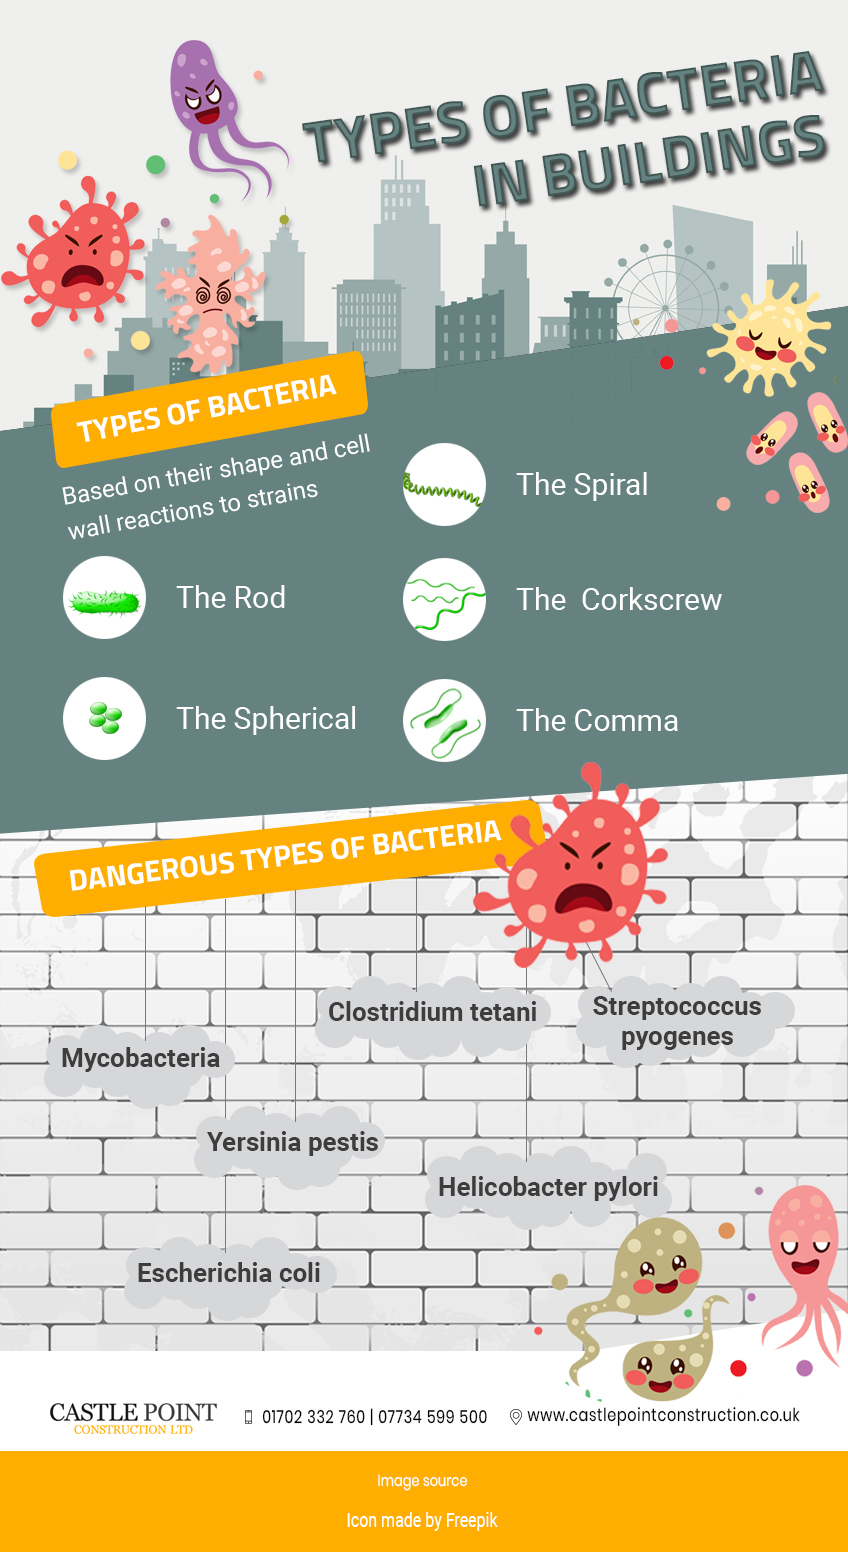 Types-of-Bacteria-in-Buildings